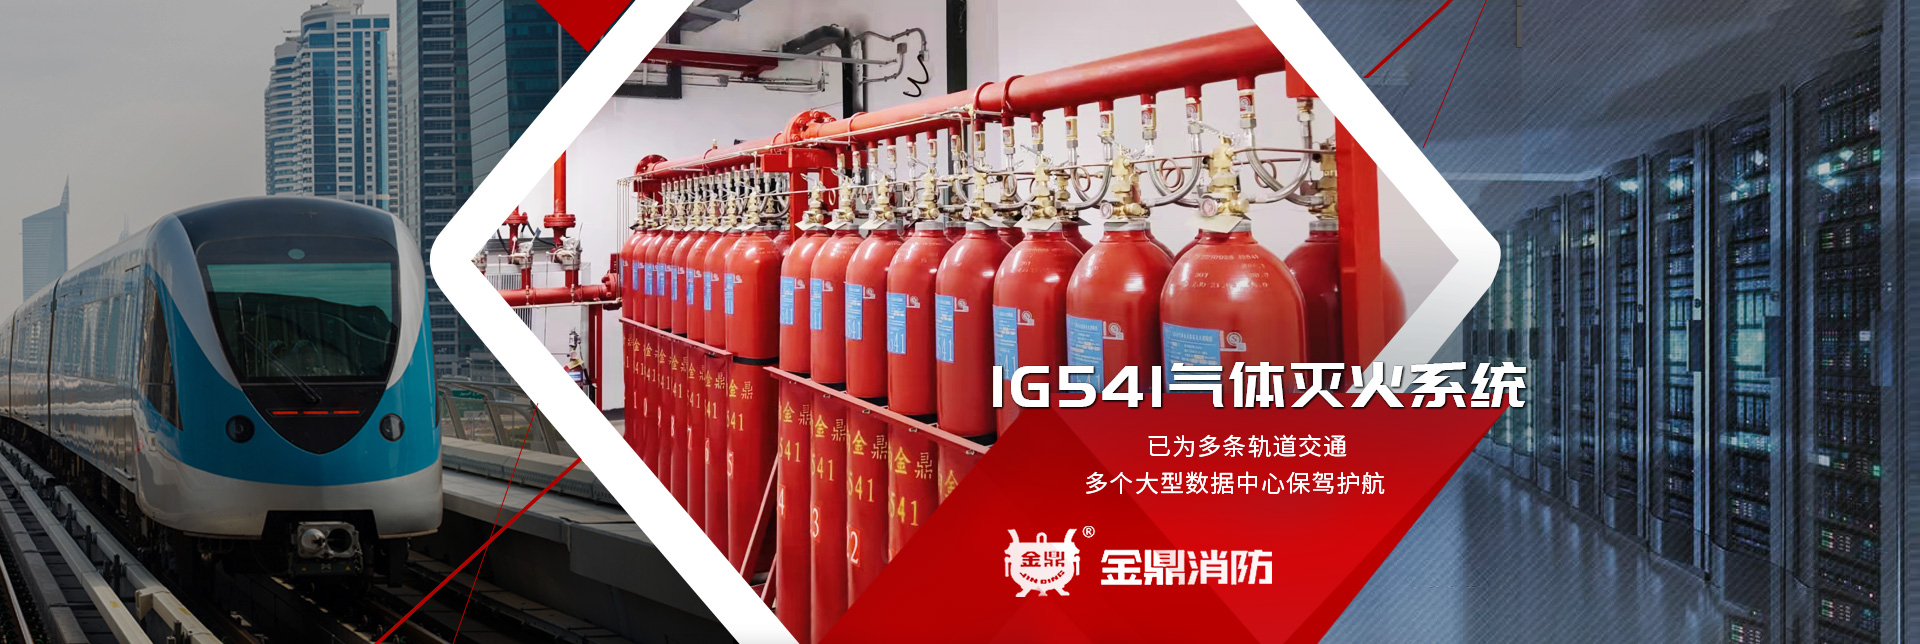 金鼎消防-大数据中心、轨道交通IG541气体灭火系统